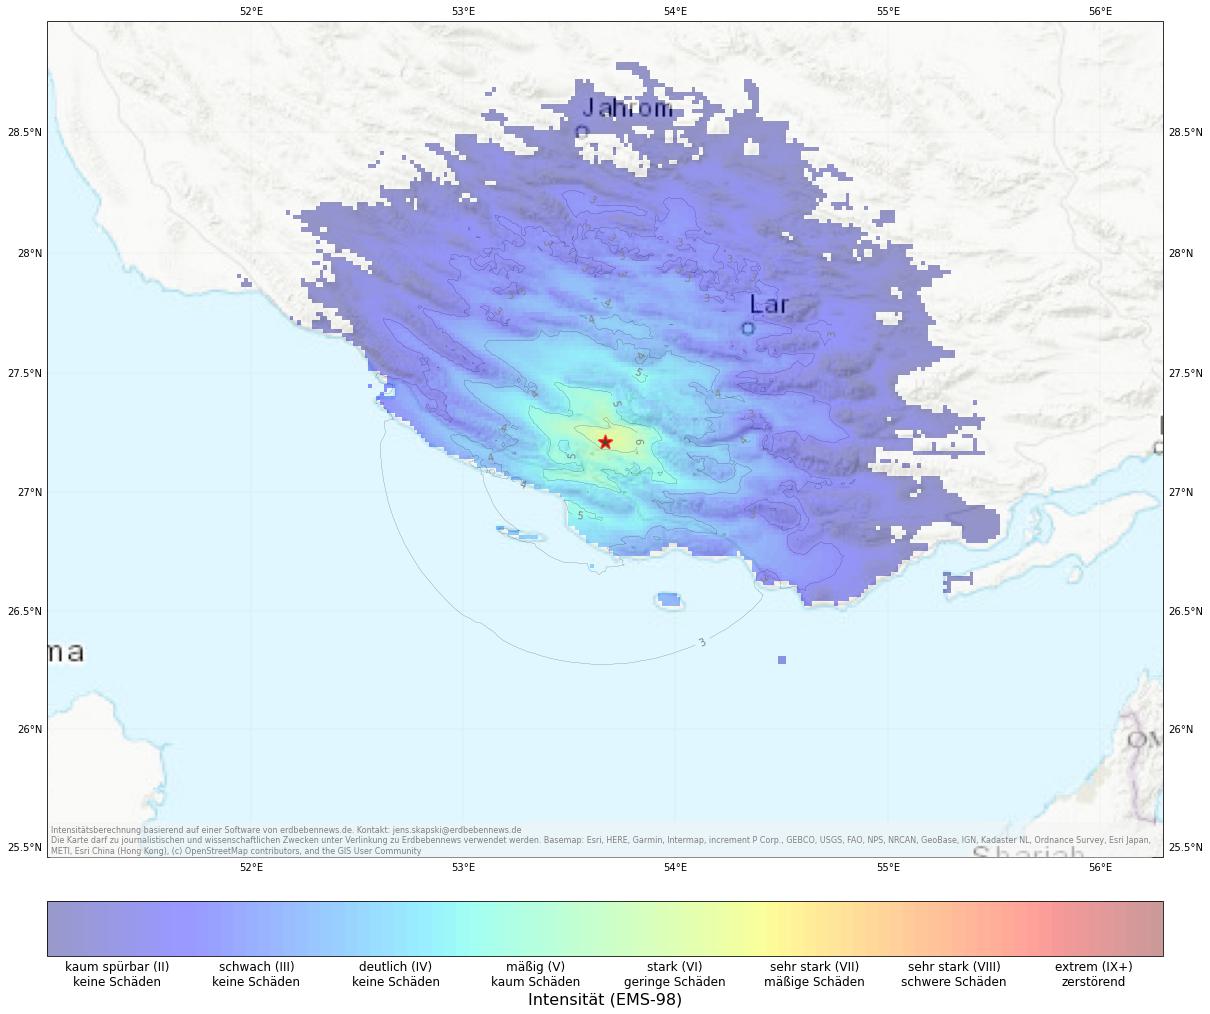 Berechnete Intensität (ShakeMap) des Erdbebens der Stärke 5.0 am 13. Mai, 19:07 Uhr in Iran